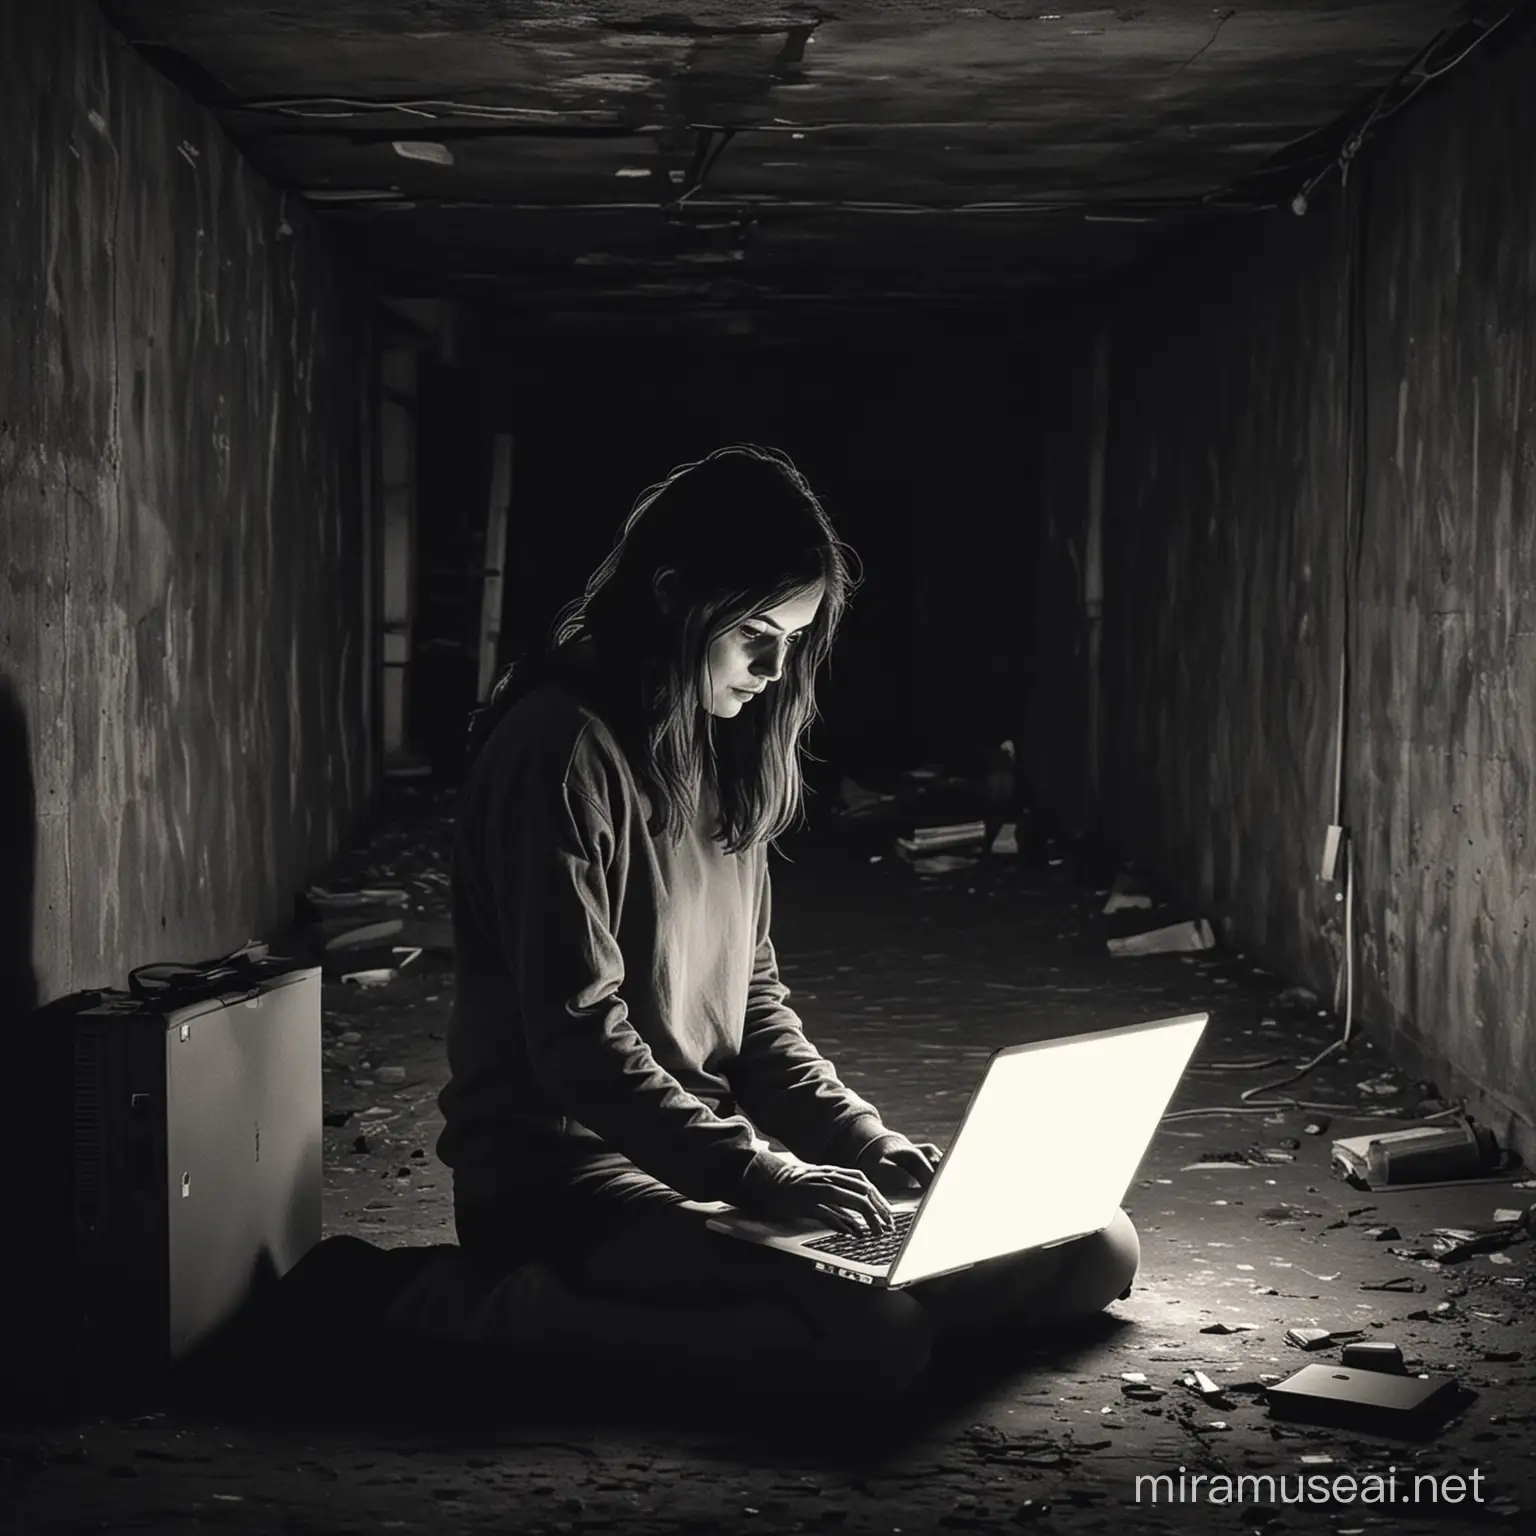 dibuja a una persona con una laptop en un sotano oscuro
